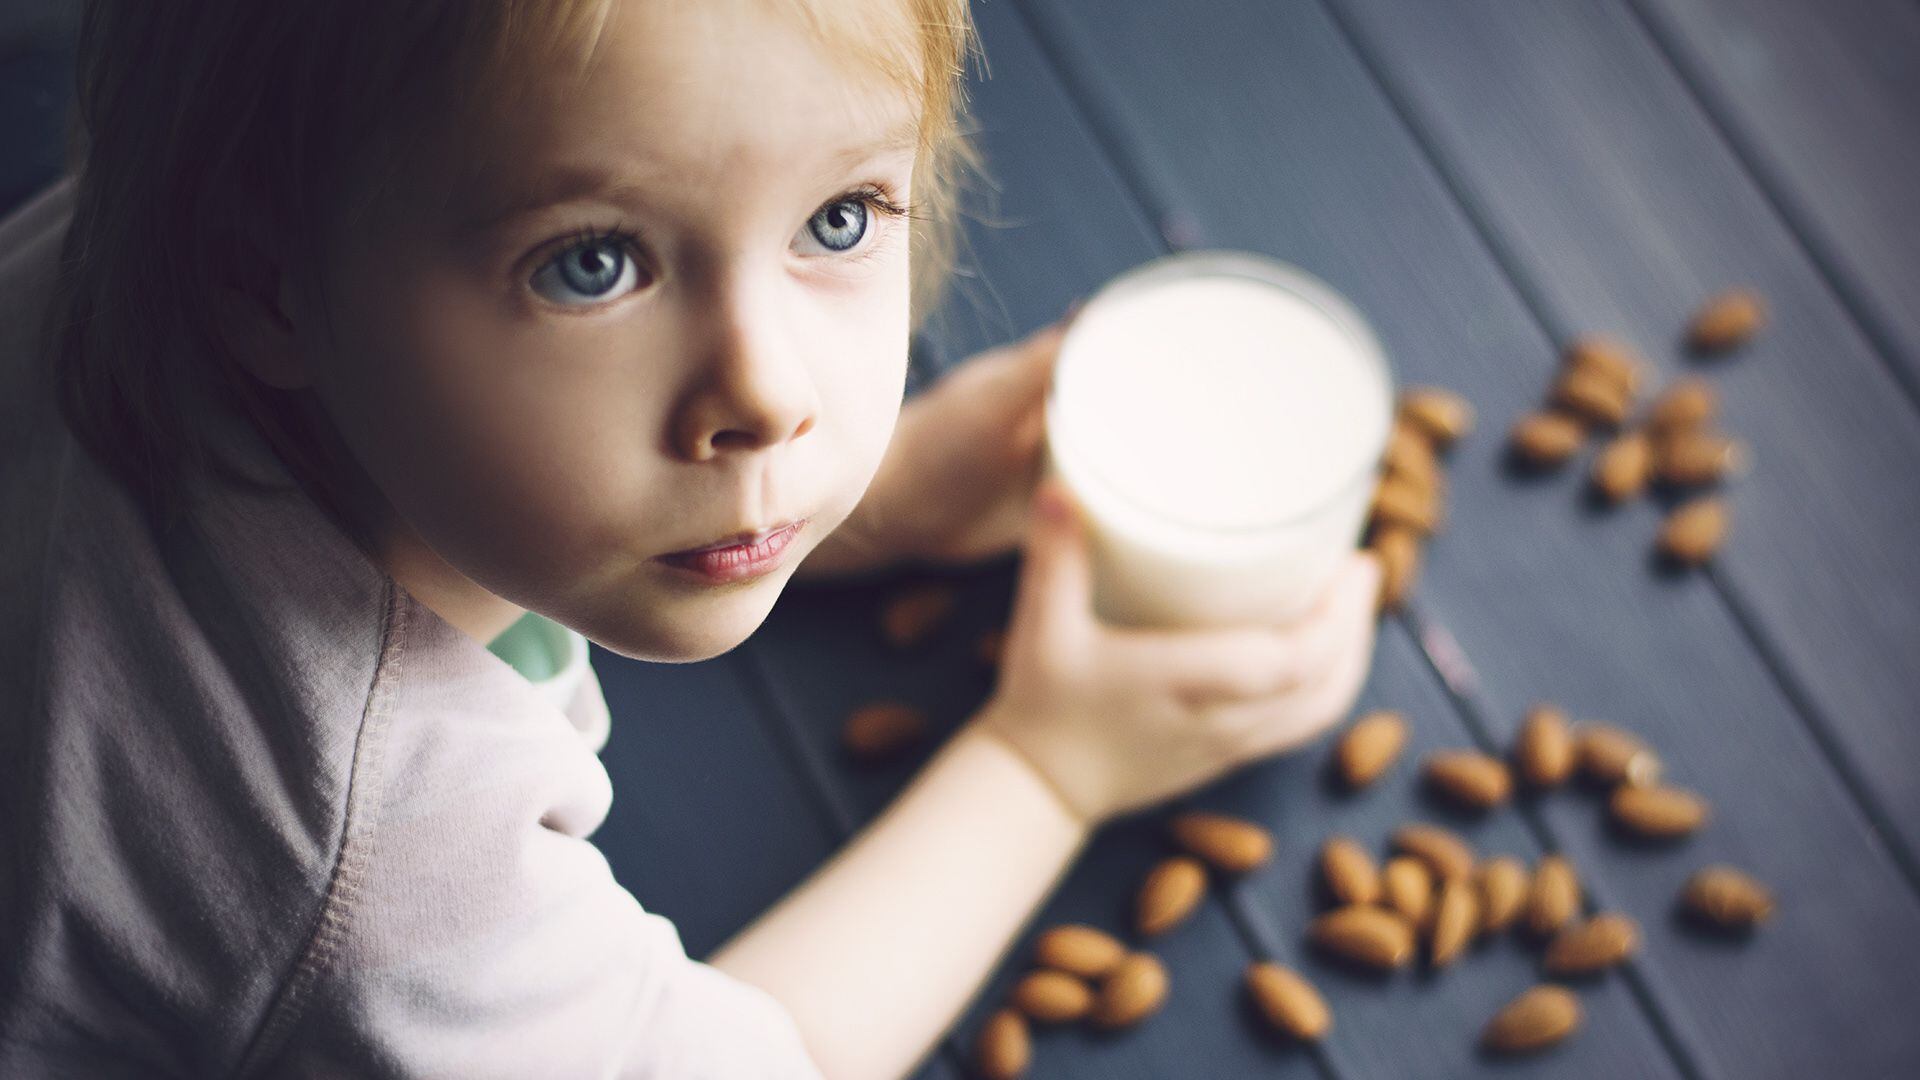 Para 2028, se pronostica que la producción mundial de leche alcanzará los 981 millones de toneladas (Shutterstock)